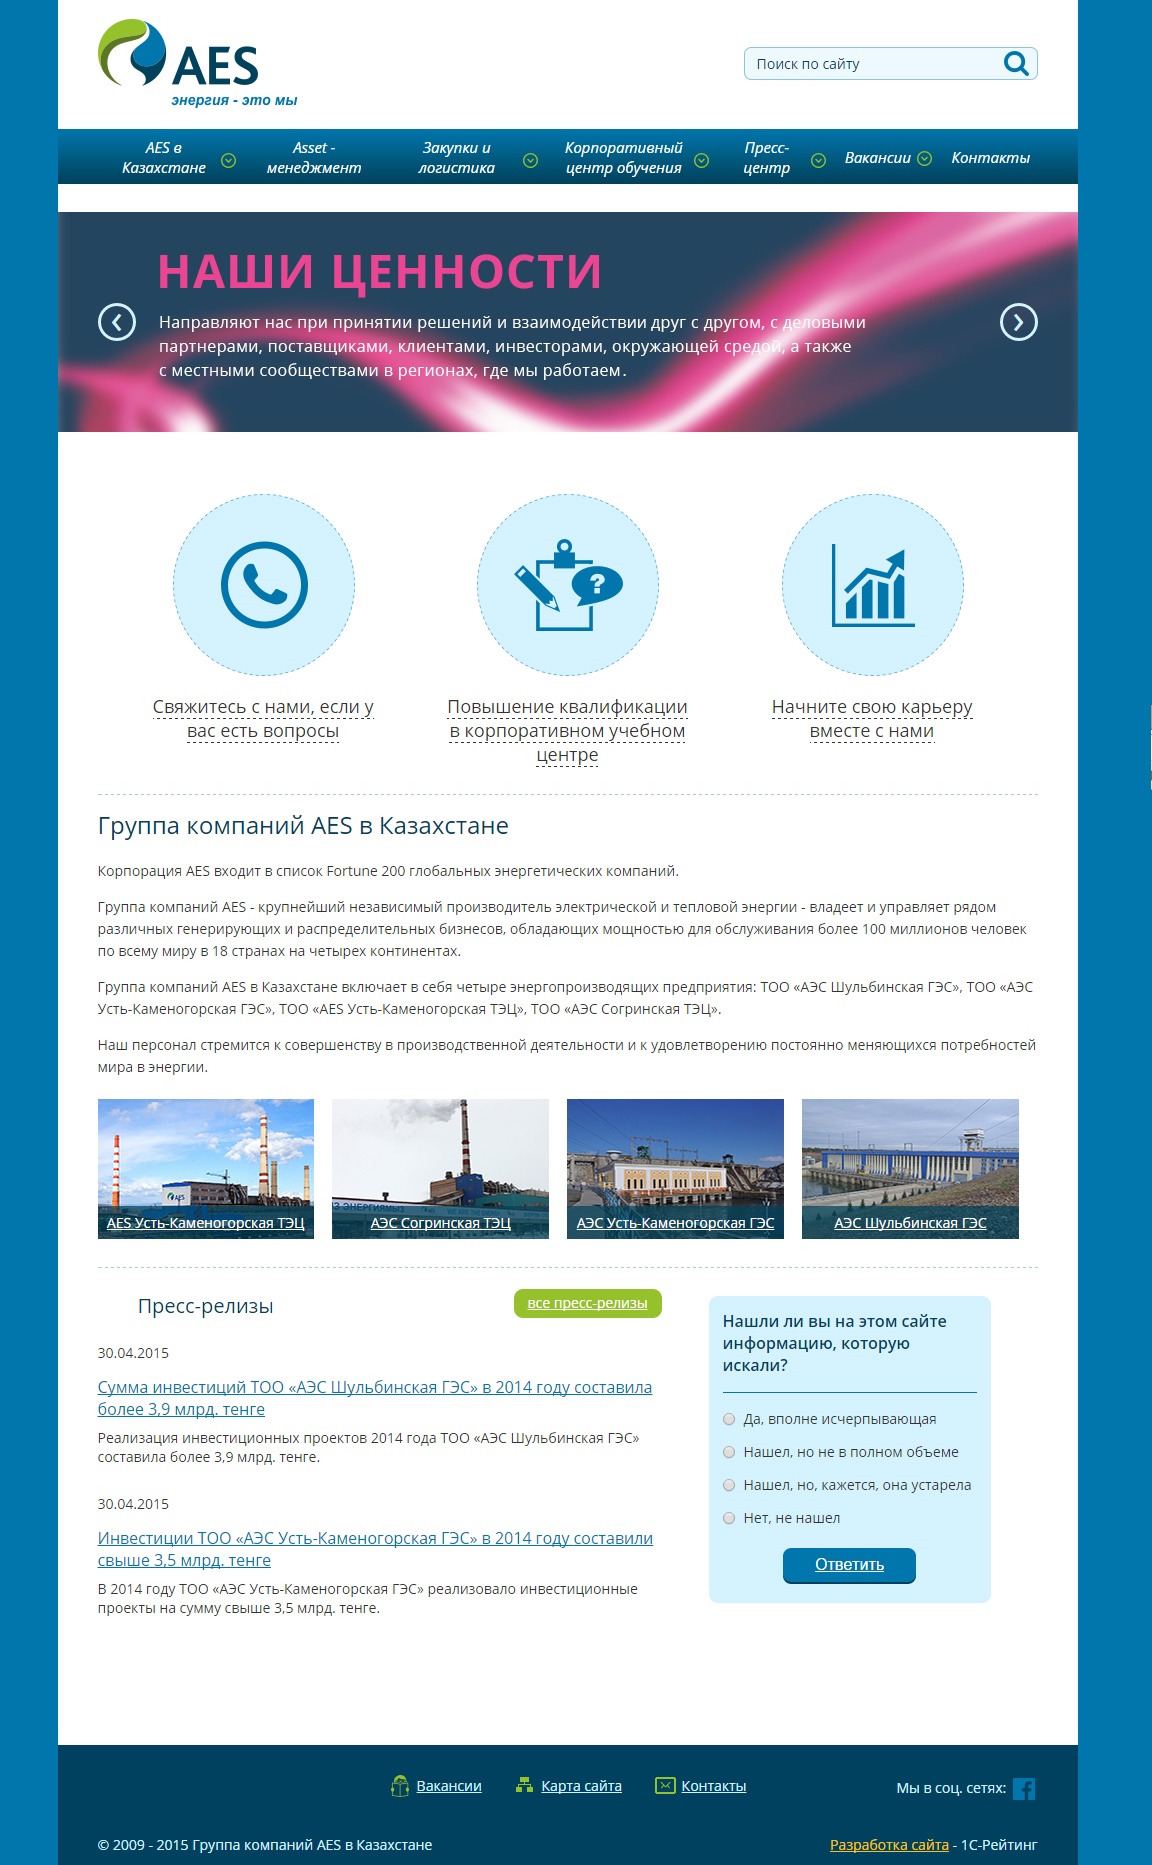 сайт группы компаний aes в казахстане